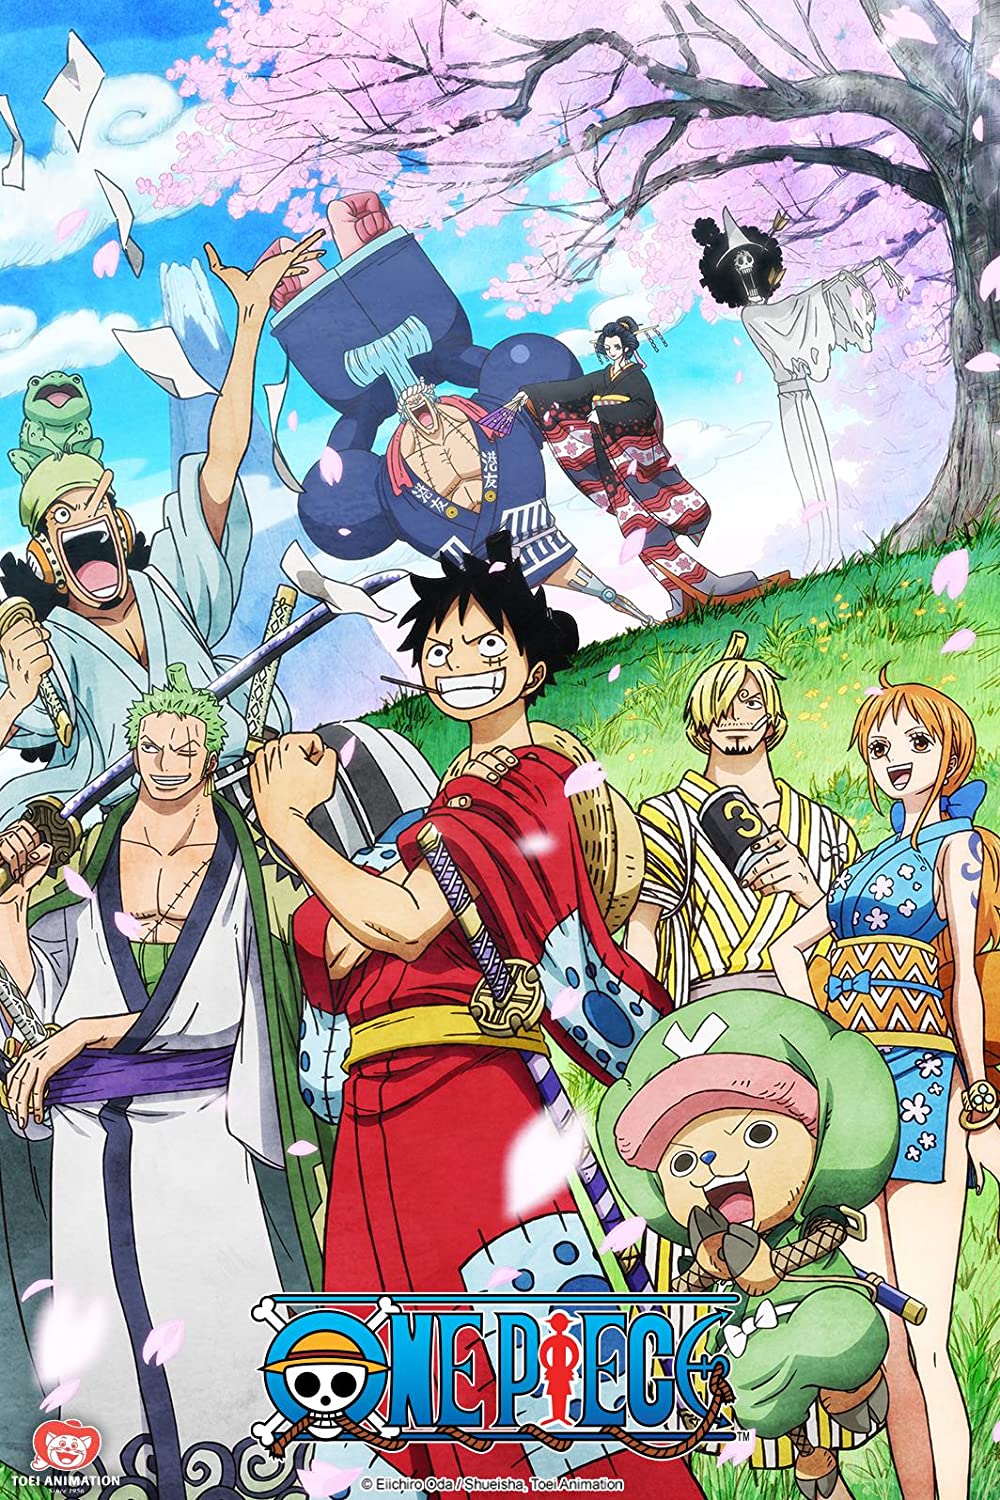 ดูหนังออนไลน์ฟรี One Piece Season 1 EP.38 วันพีช อิสท์บลู ซีซั่น 1 ตอนที่ 38